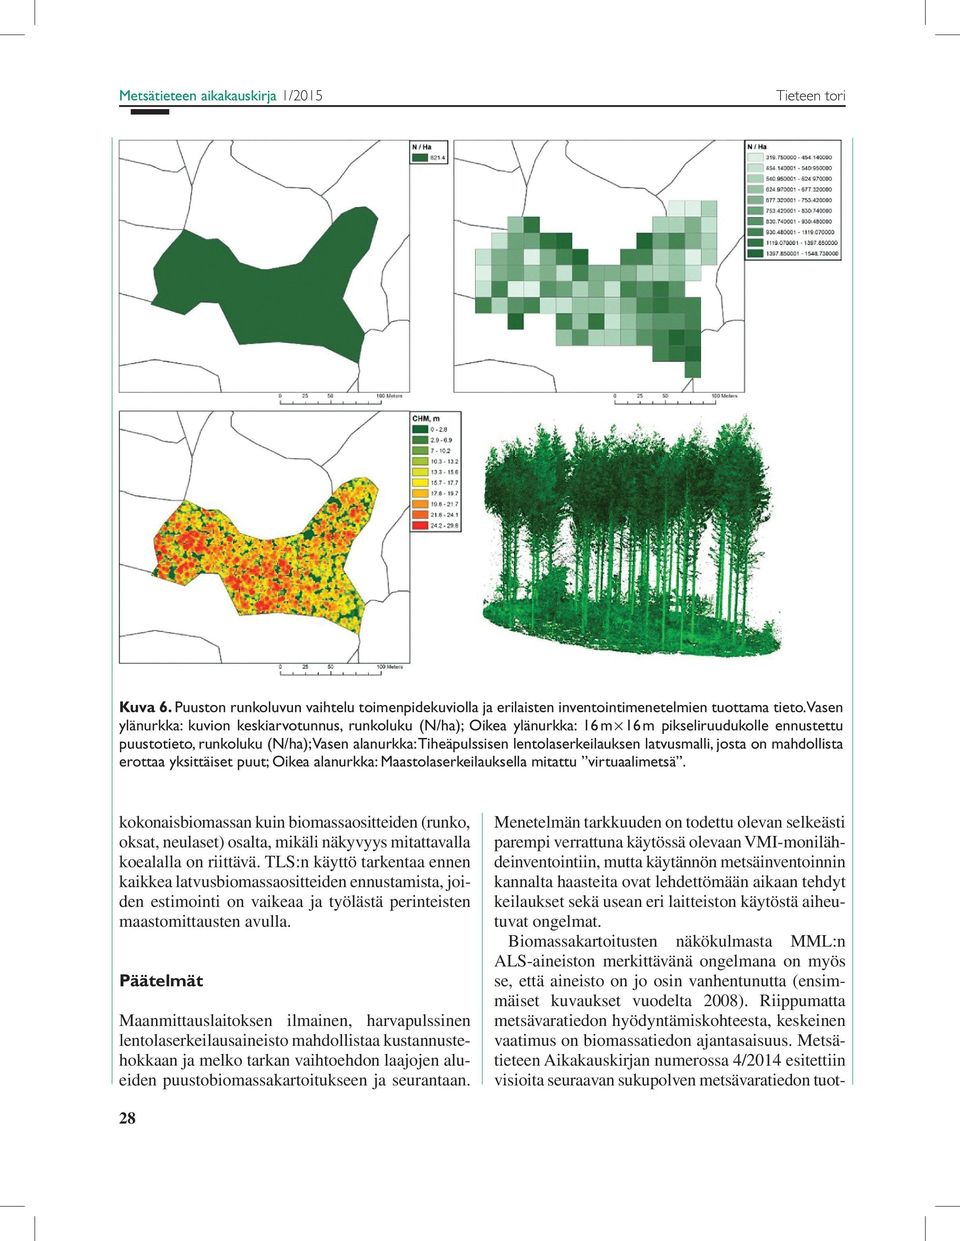 latvusmalli, josta on mahdollista erottaa yksittäiset puut; Oikea alanurkka: Maastolaserkeilauksella mitattu virtuaalimetsä.